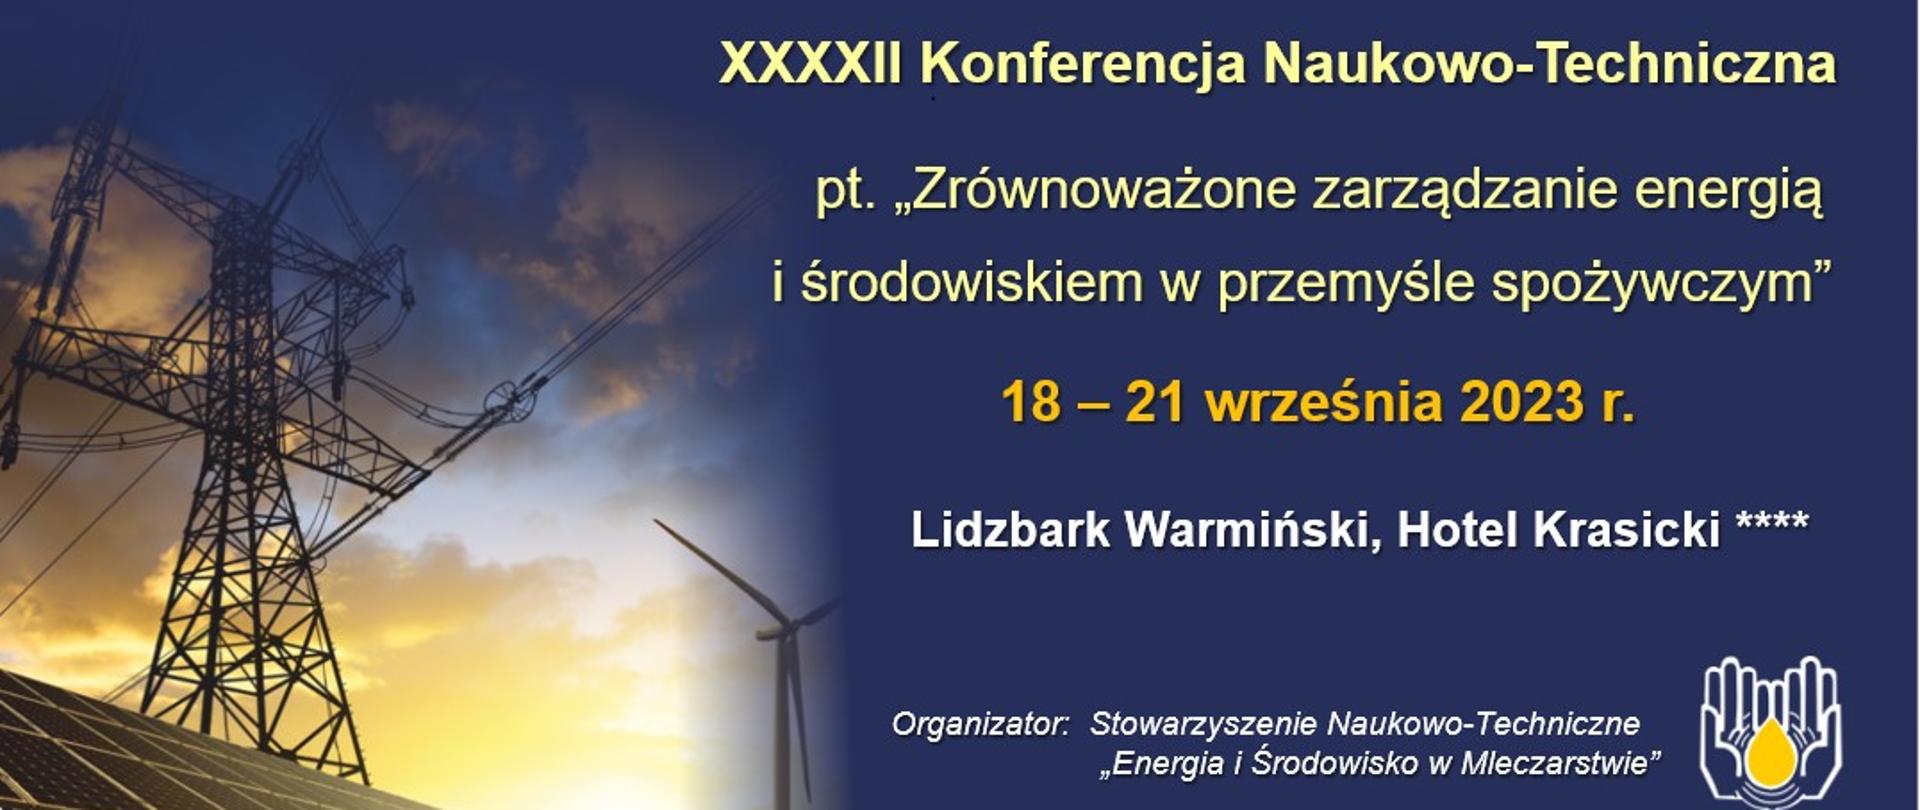 Plansza informacyjna. XXXXII Konferencja Naukowo-Techniczna nt. „Zrównoważone zarządzanie energią i środowiskiem w przemyśle spożywczym